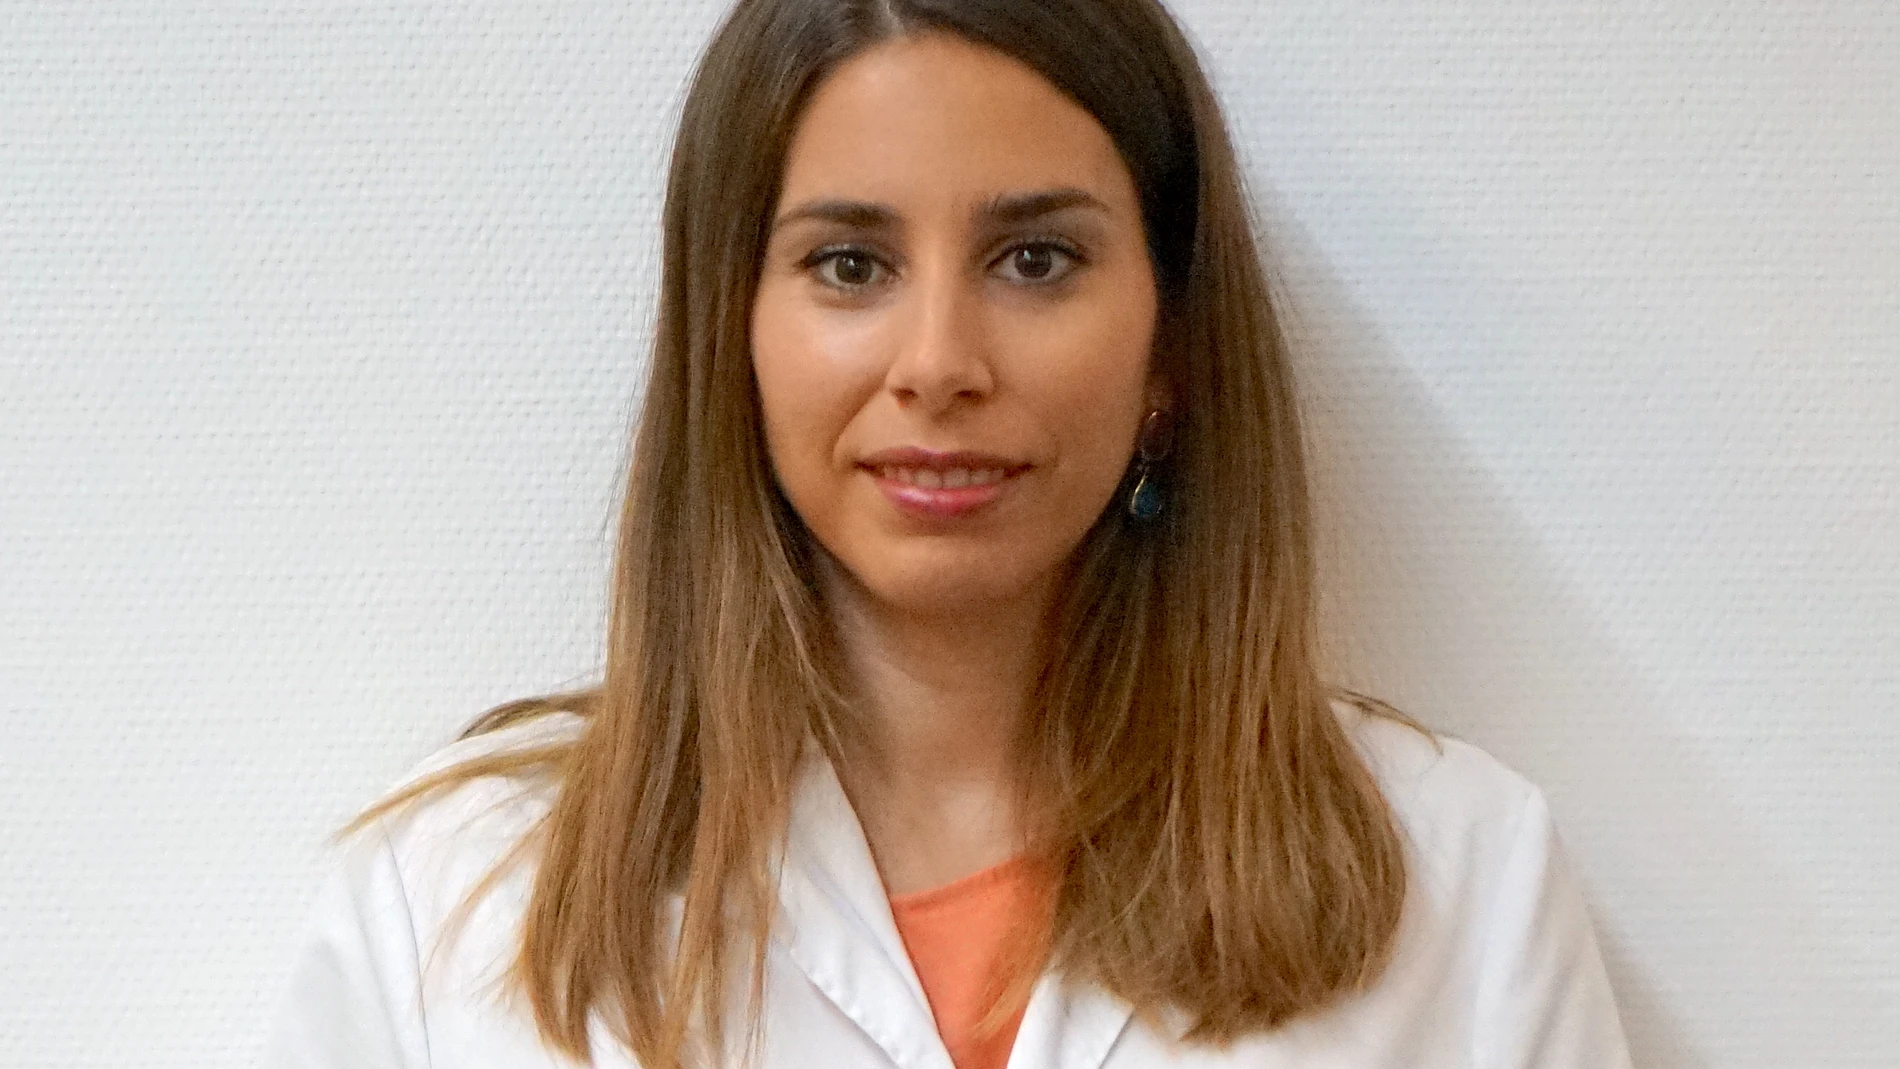 Dra. Teresa Alvarado 